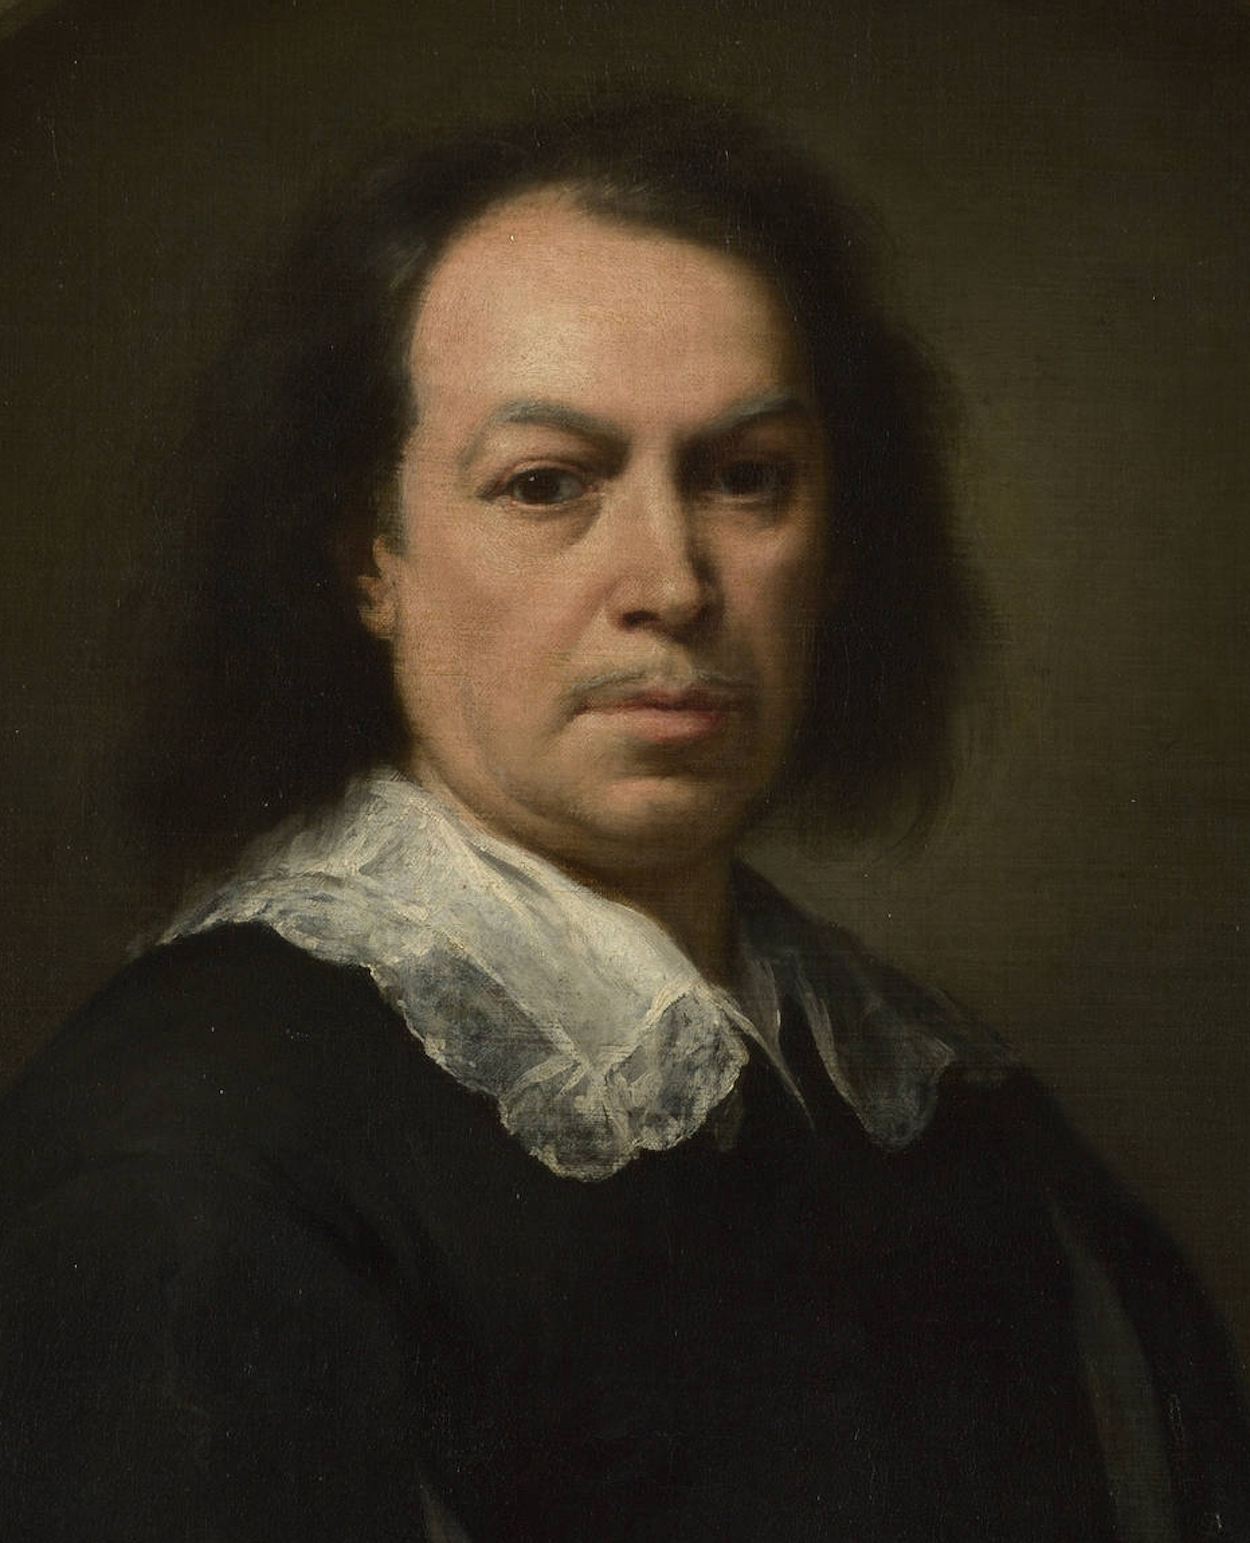 Bartolomé Esteban Murillo - December 1617 - April 3, 1682